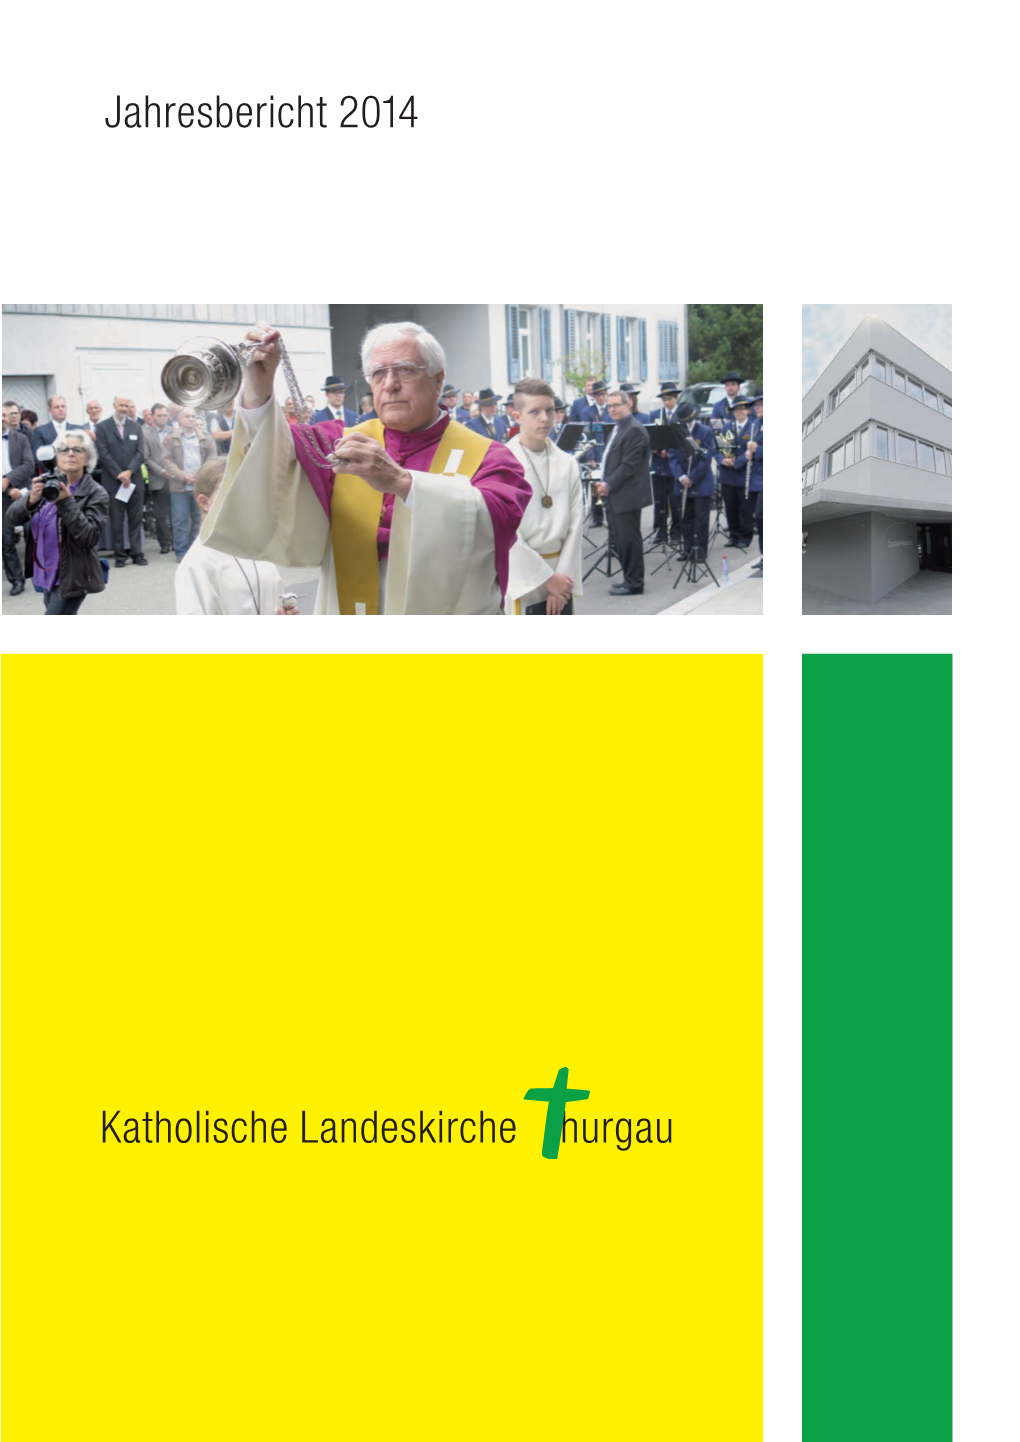 Katholische Landeskirche Hurgau Jahresbericht 2014